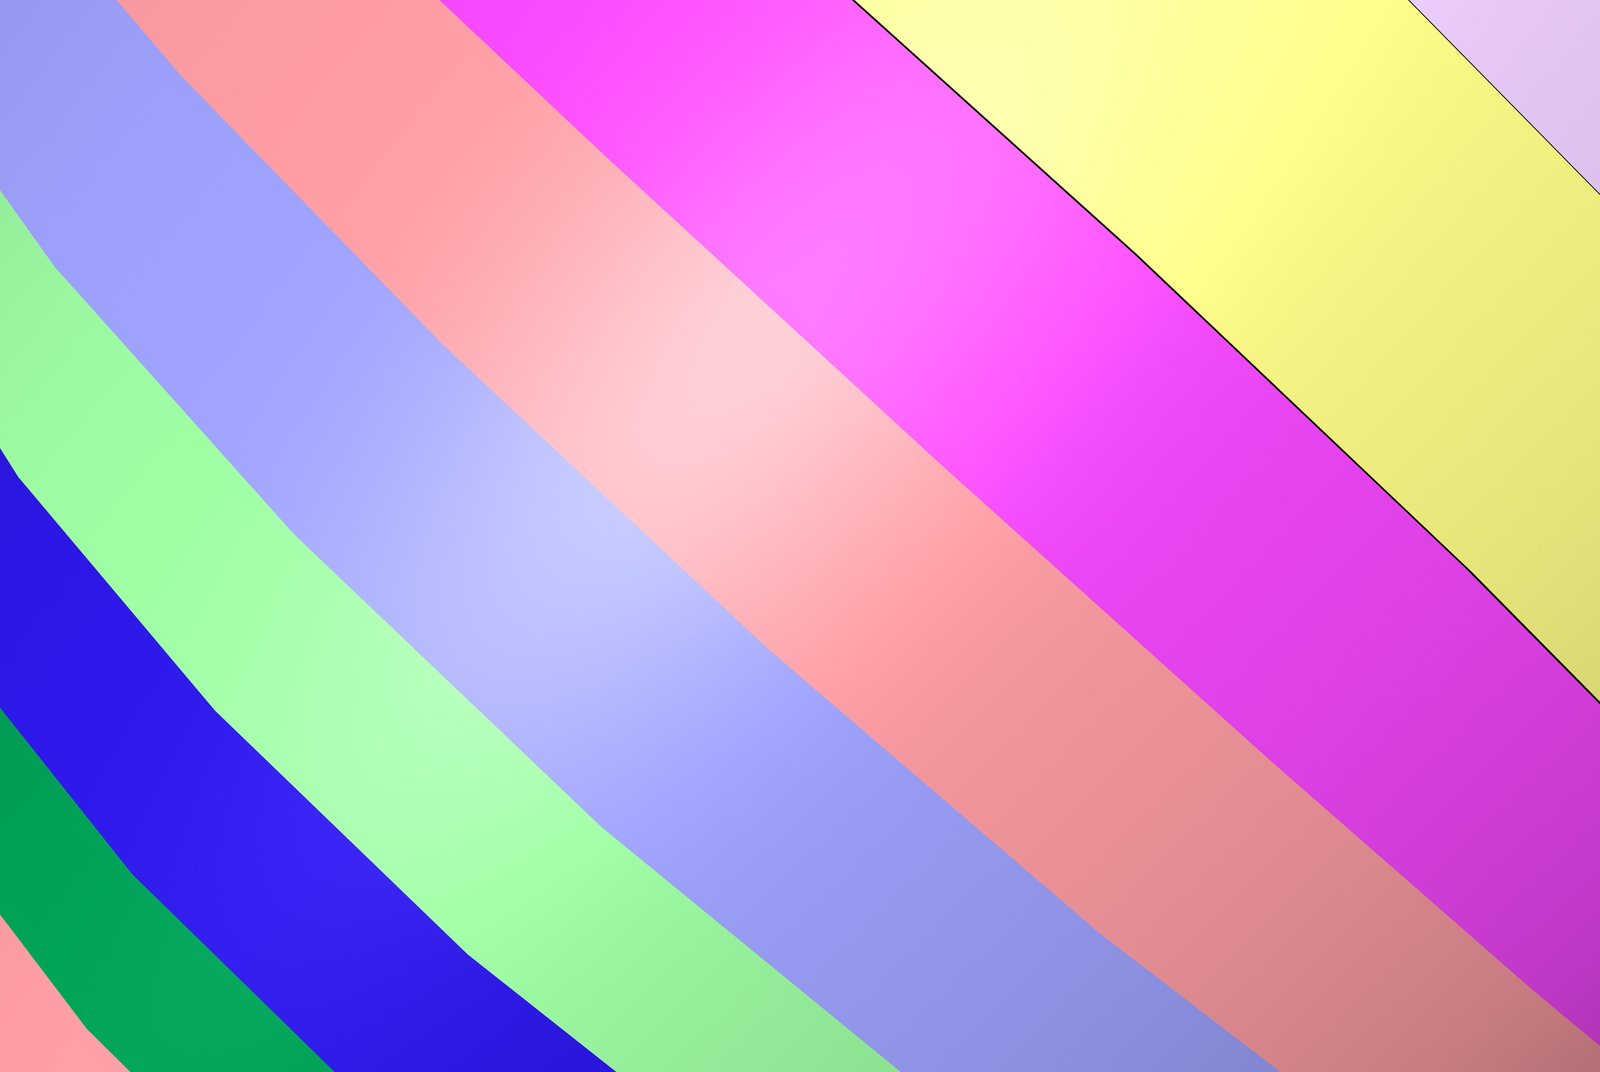 the diagonal stripes are multi - colored, in color